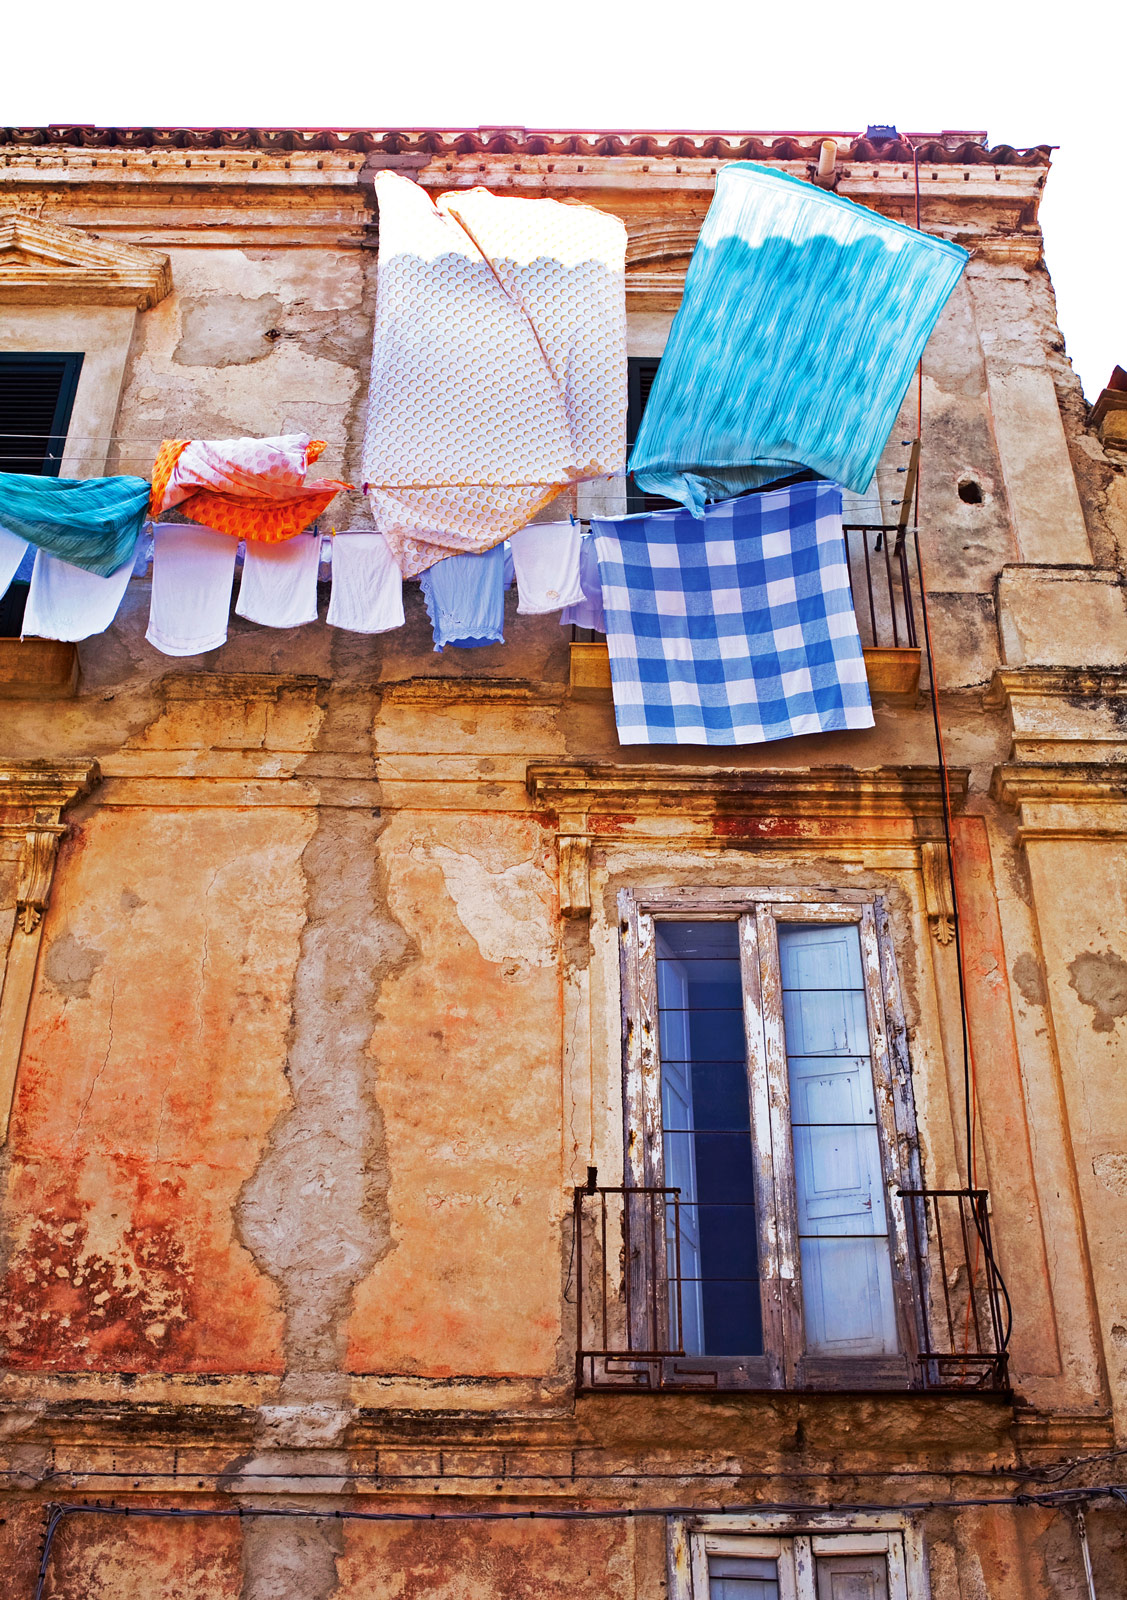 Italy_Laundry_8791_web